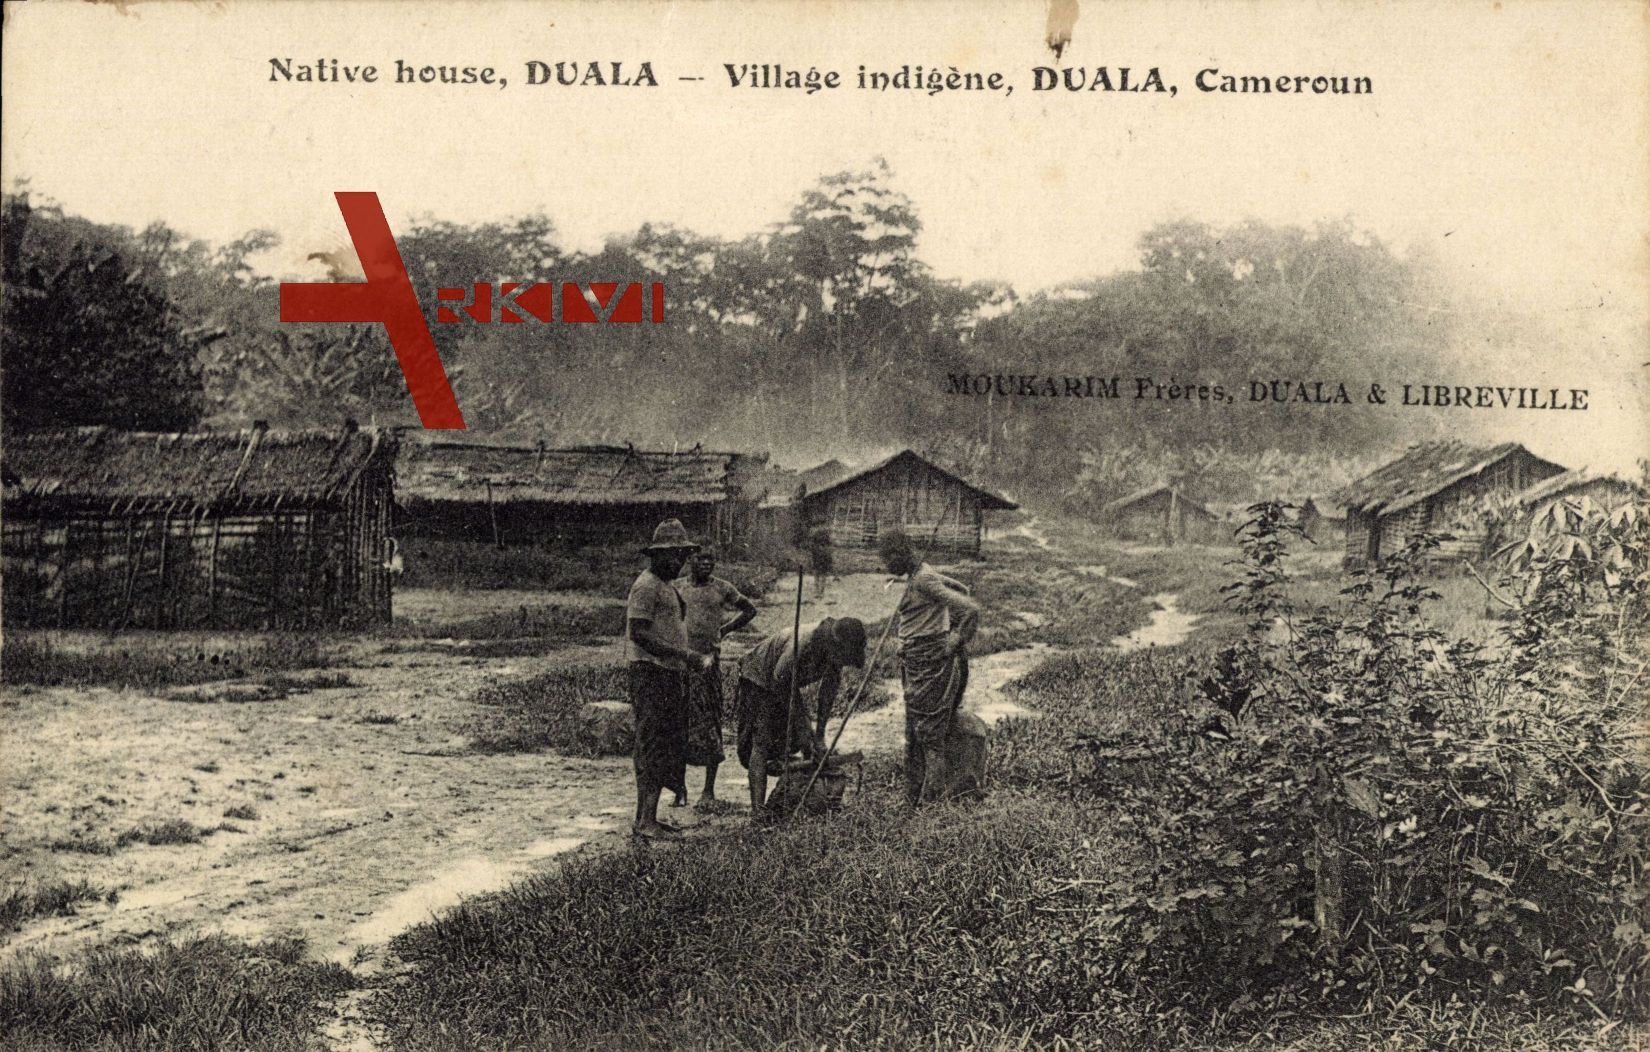 Duala Kamerun, Village indigène, Native house, Dorf mit Einwohnern